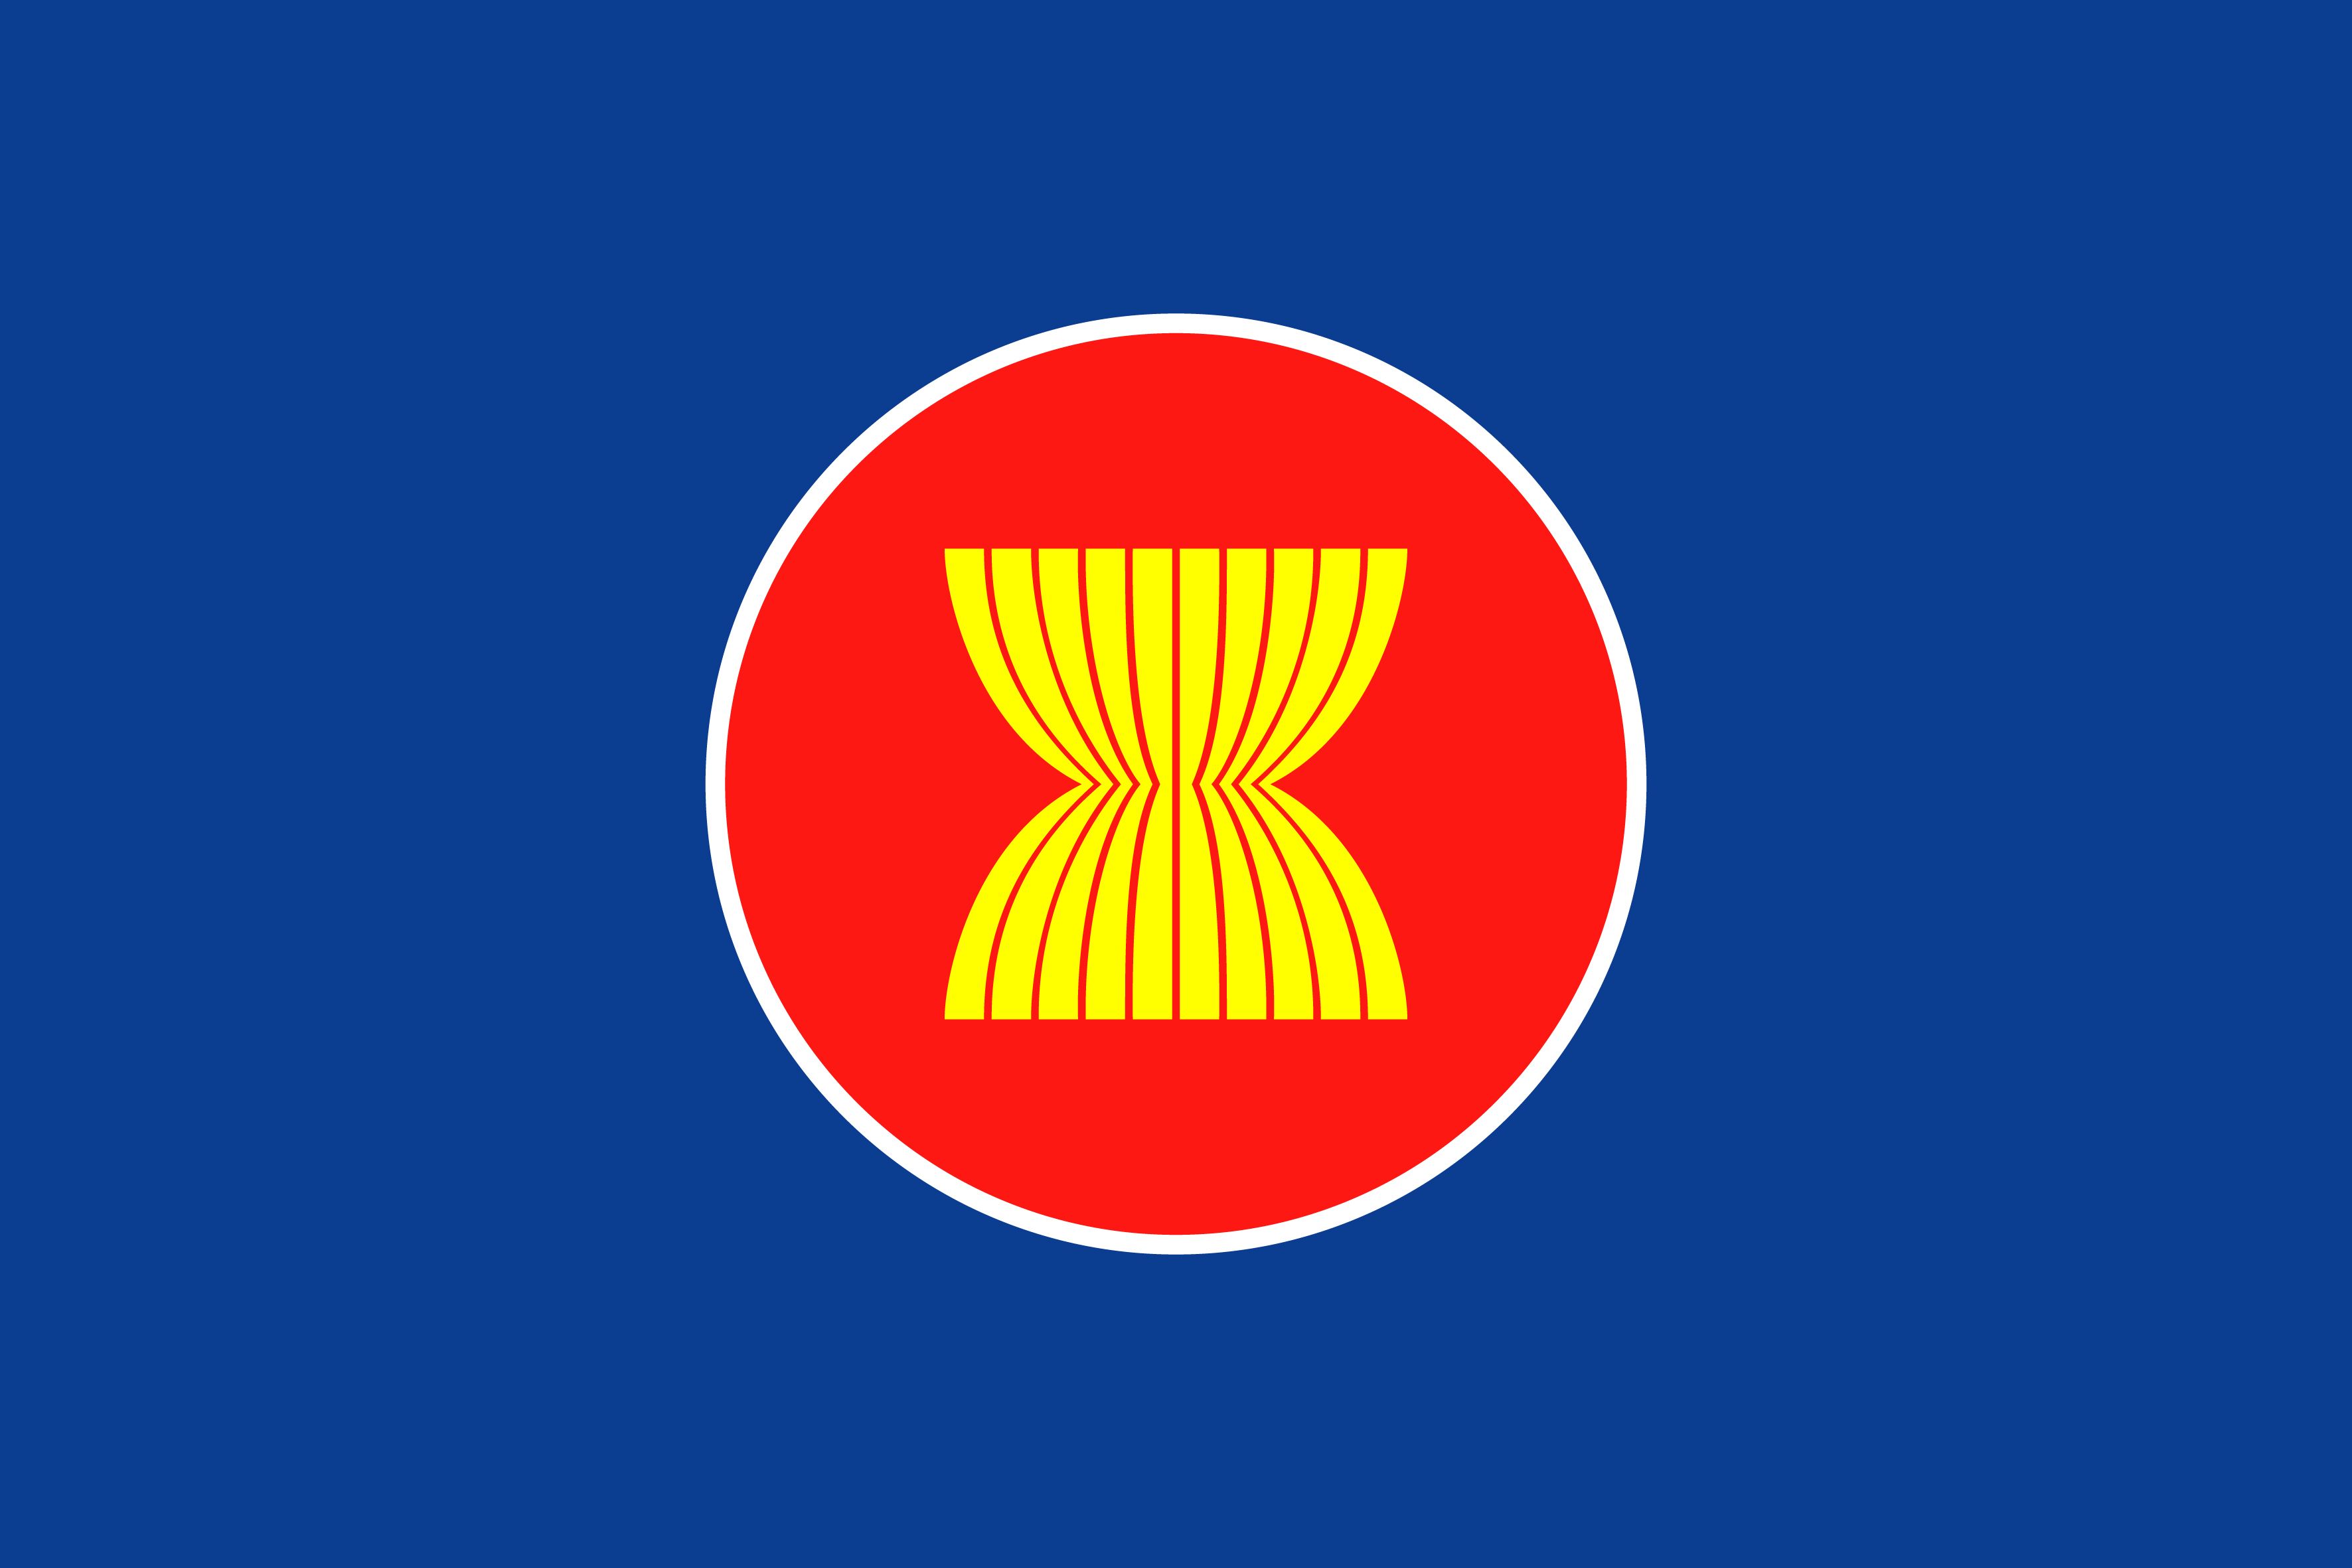 ASEAN cờ: Bộ cờ của Liên minh các quốc gia Đông Nam Á (ASEAN) đại diện cho sự đoàn kết và hợp tác giữa các thành viên. Với khẩu hiệu \